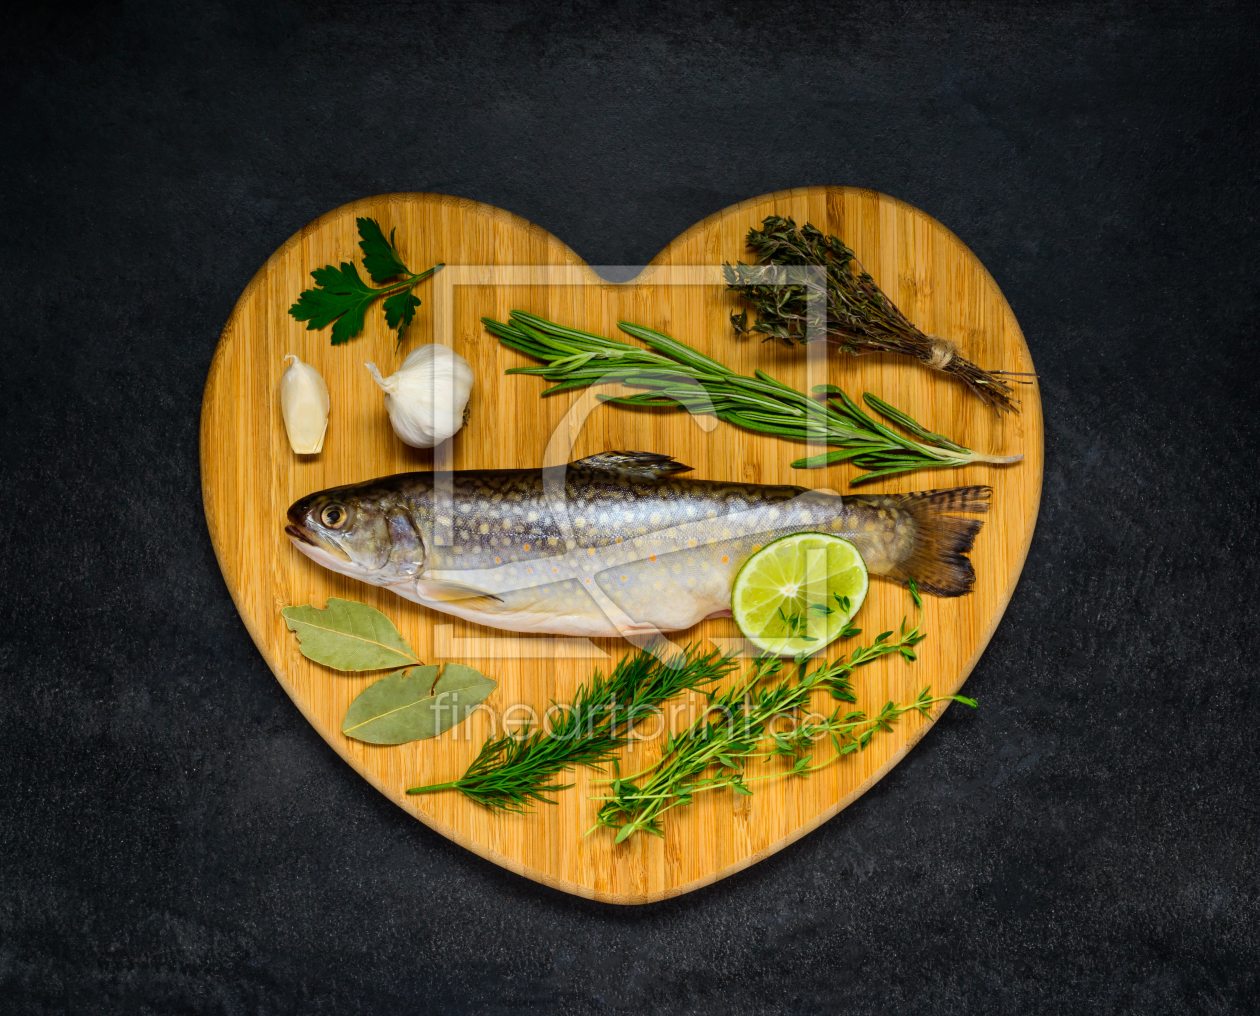 Bild-Nr.: 11830411 Roher Fisch auf einem Herz Kochbrett mit Zutaten erstellt von xfotostudio